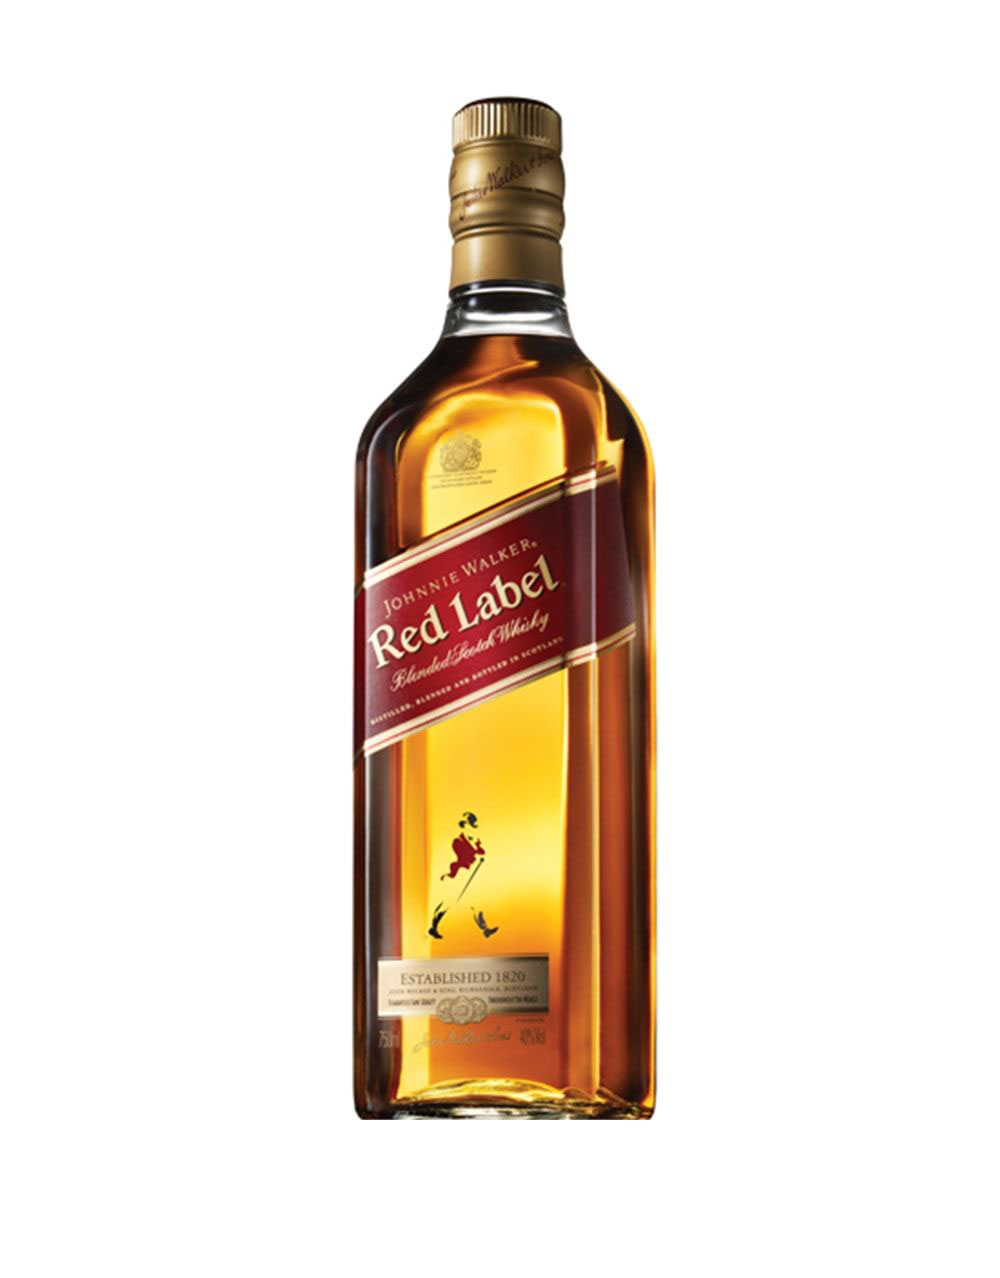 The Glenrothes Sherry Cask Reserve Single Malt Scotch Whisky